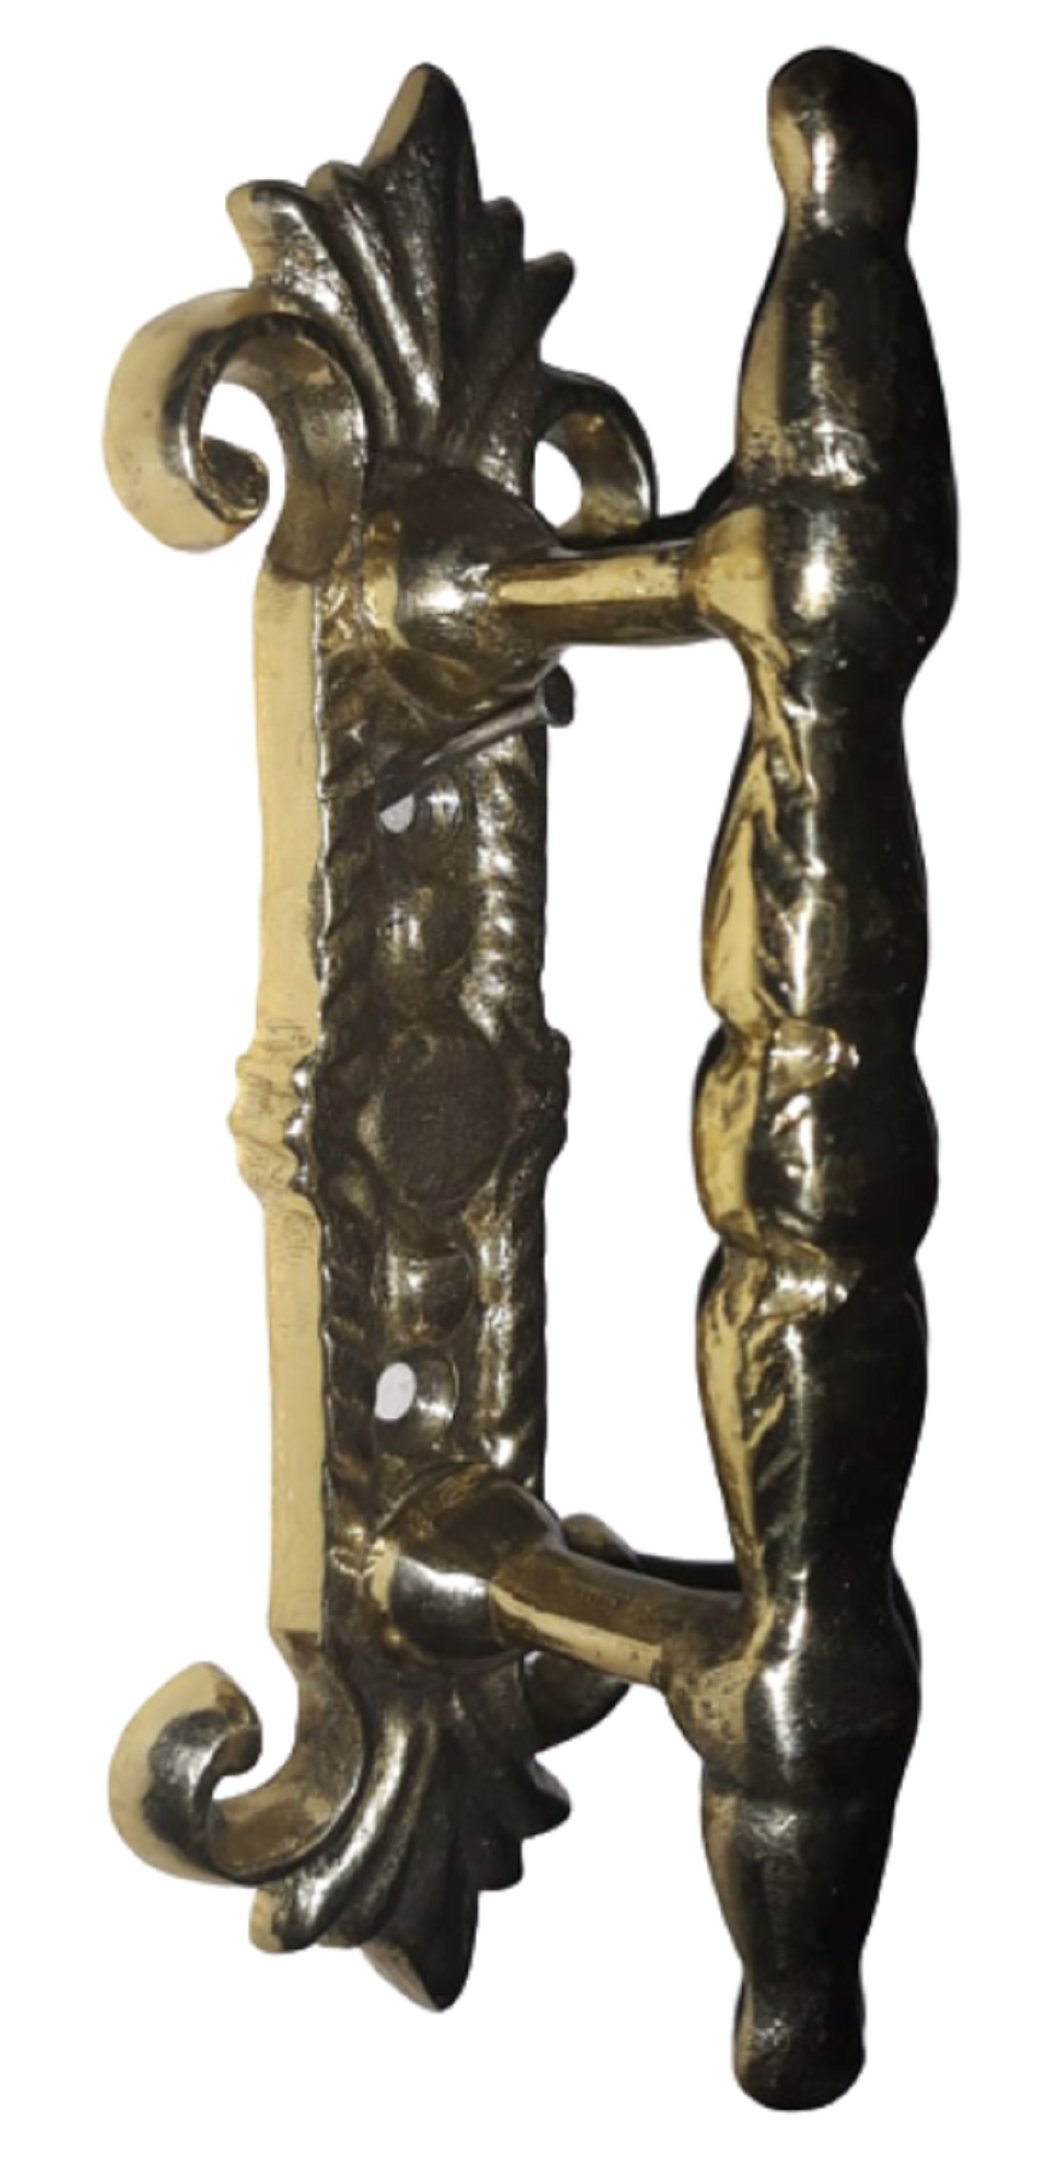 Puxador Em Bronze Modelo Antigo Com Espelho Portas Portões - 2